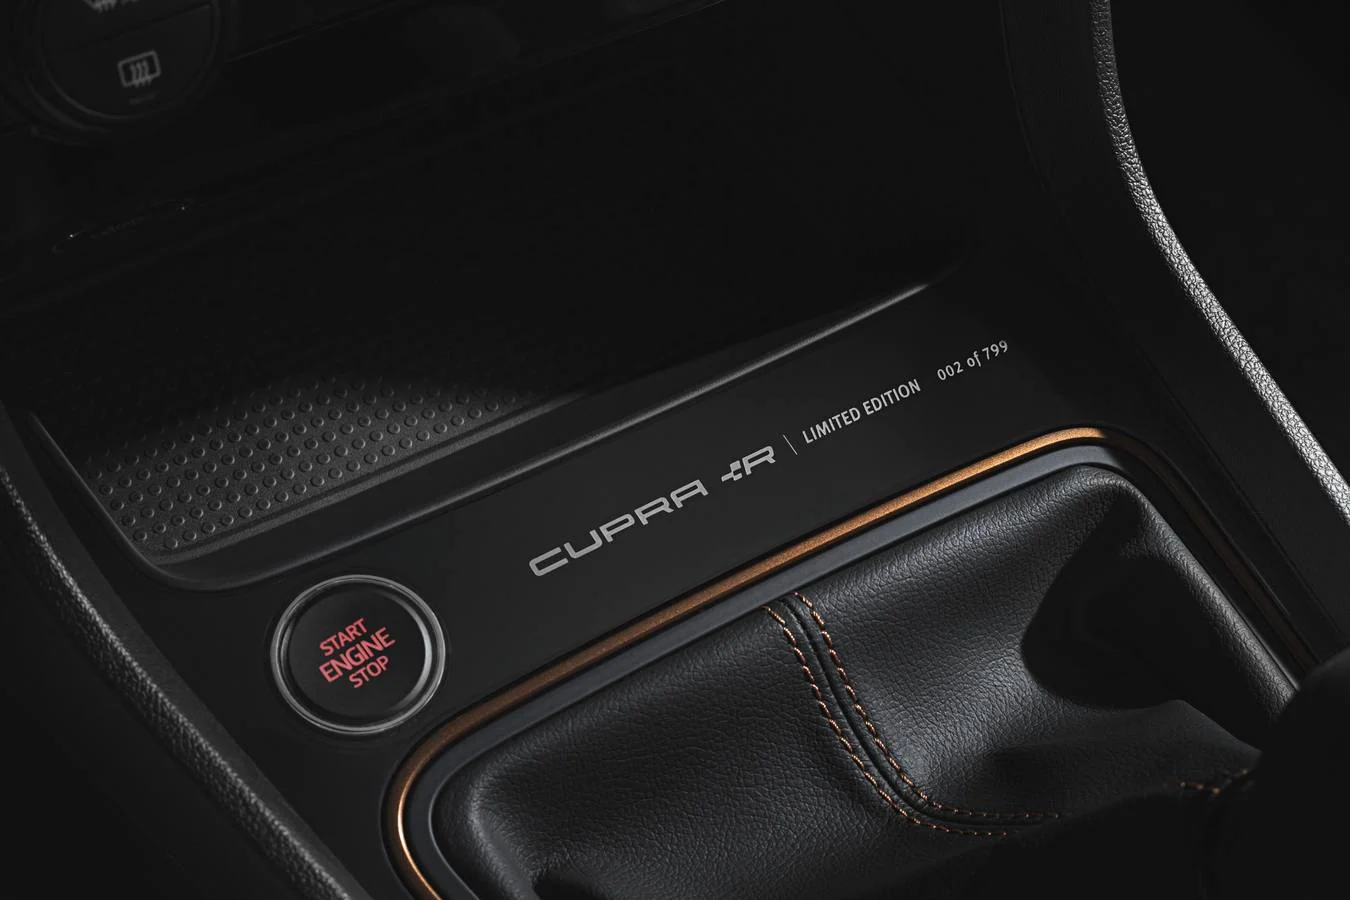 A primeros de año llega la nueva serie especial del Cupra, que con 310 caballos para la versión con cambio manual supone el modelo más potente de la marca. A nuestro mercado solo se venderán 40 unidades.